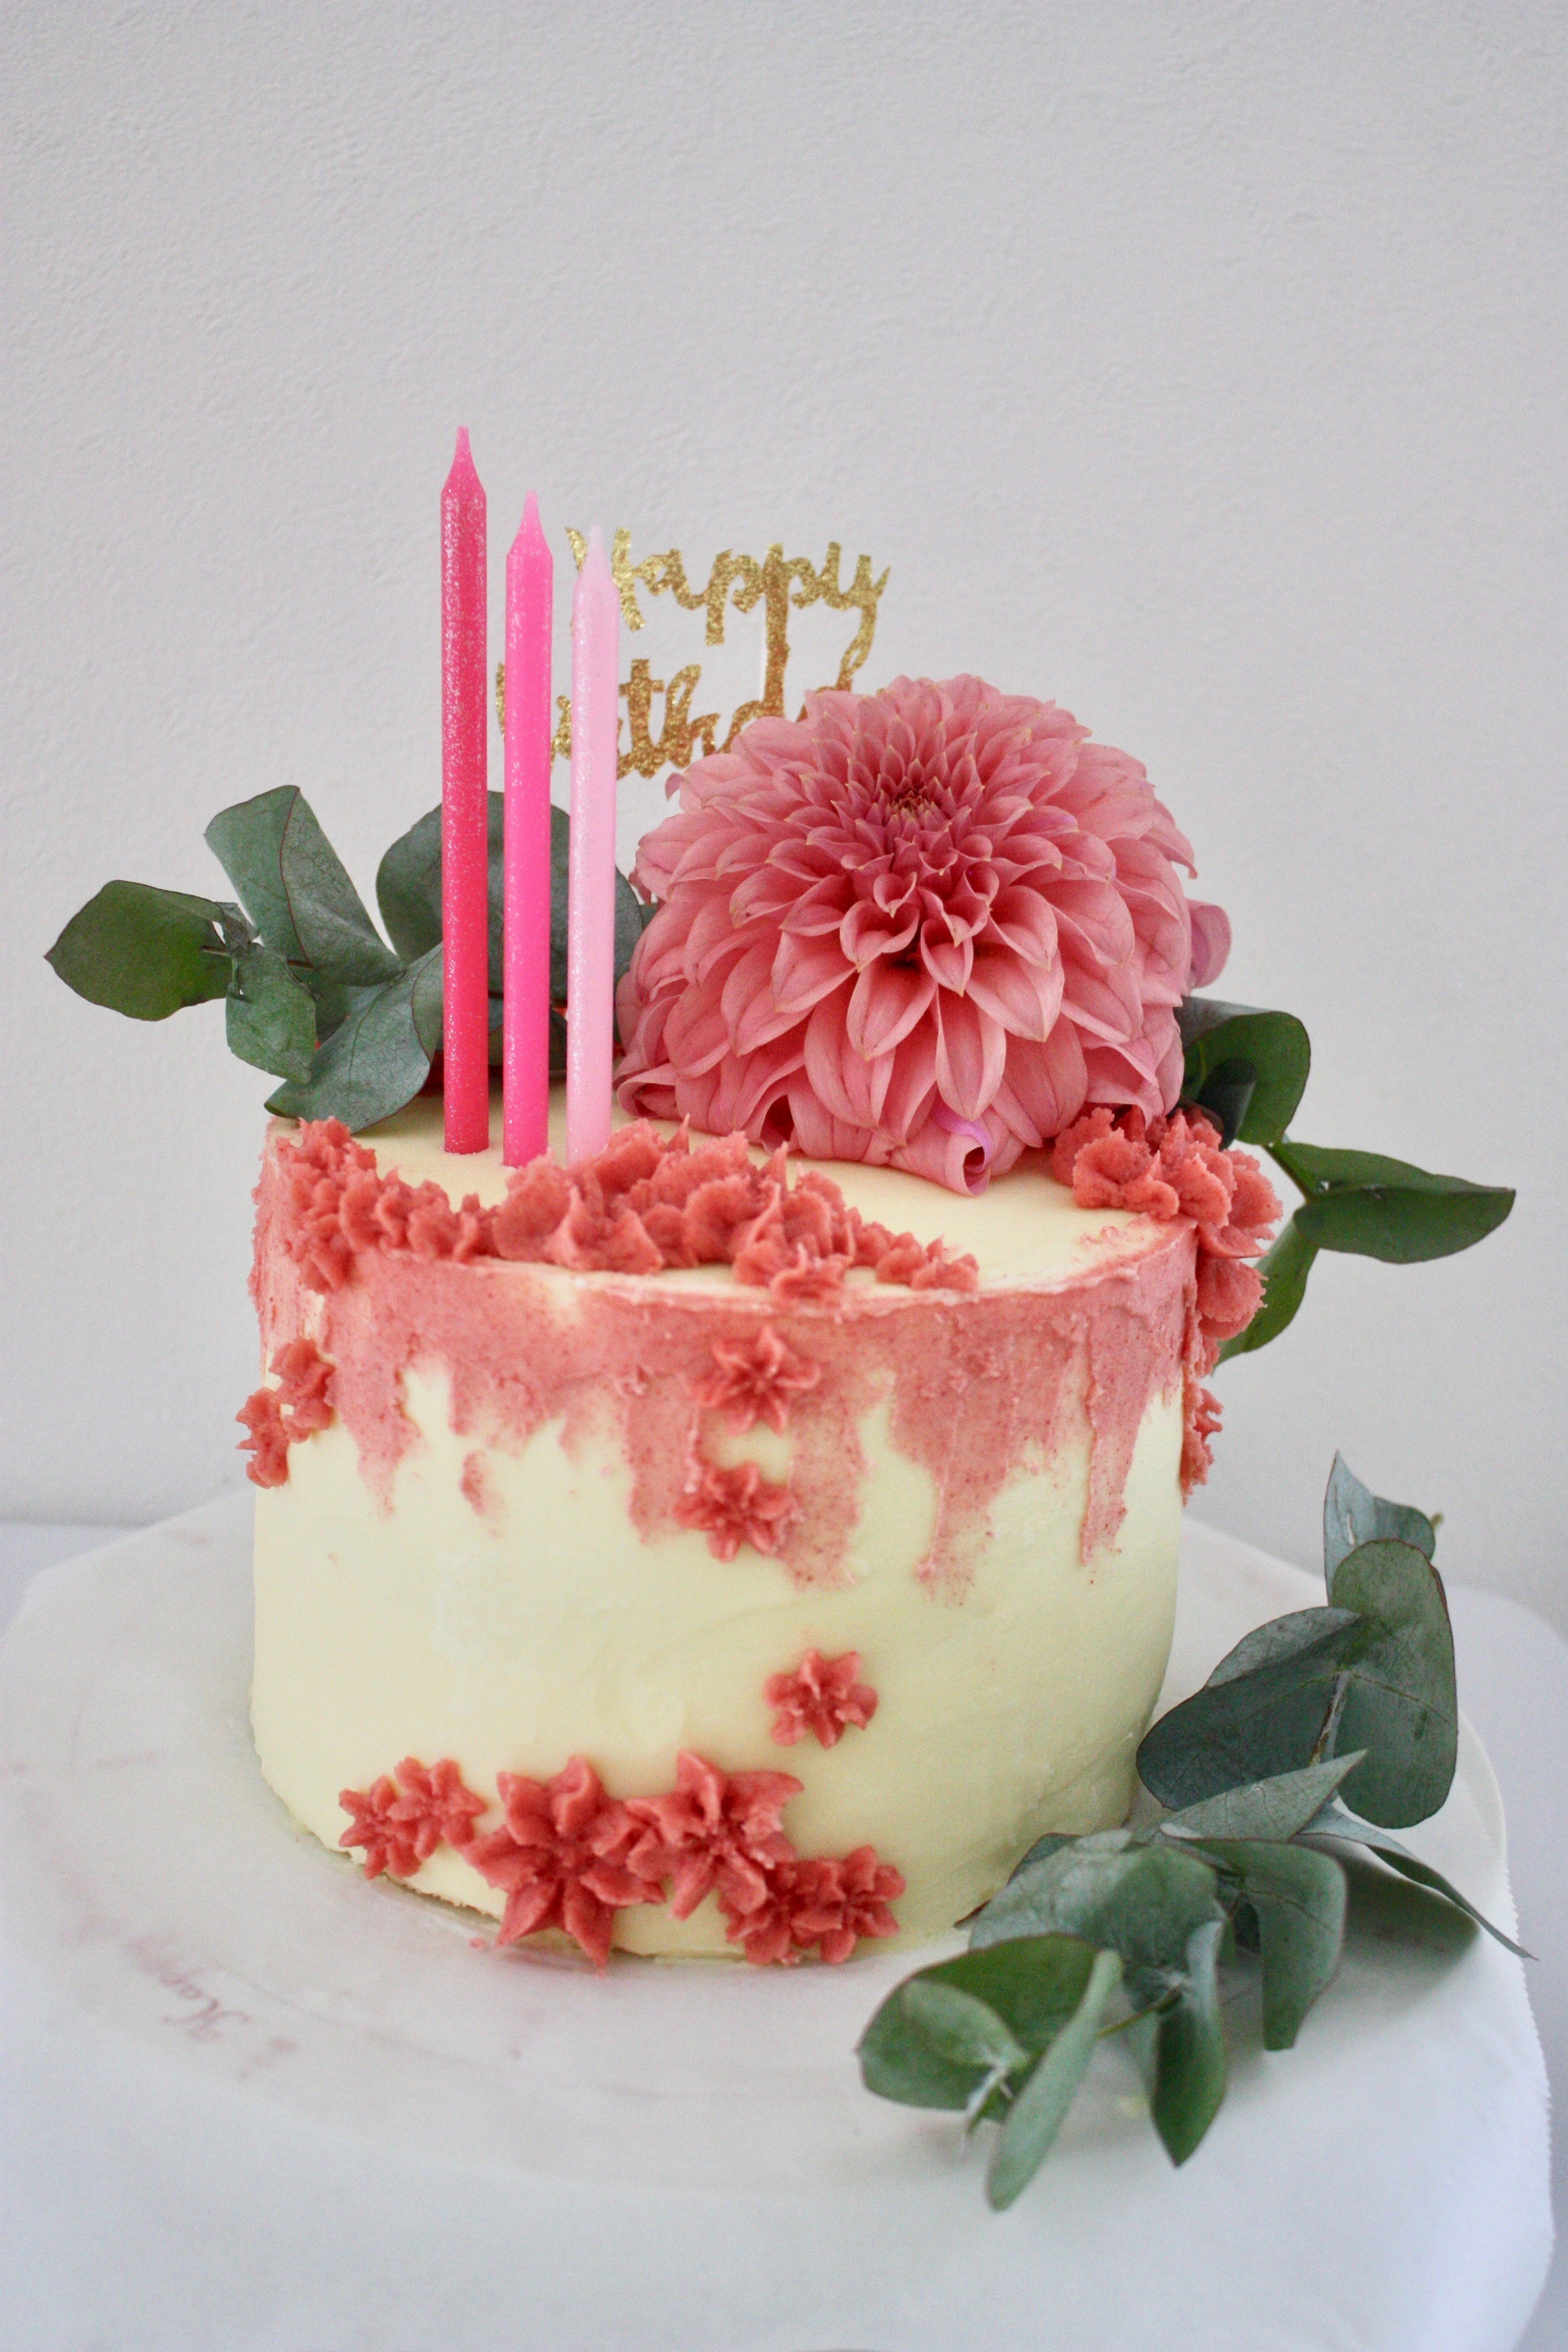 ボタニカル感のあるピンク色のケーキ パリ風 ママスタイル Blog Madame Figaro Jp フィガロジャポン